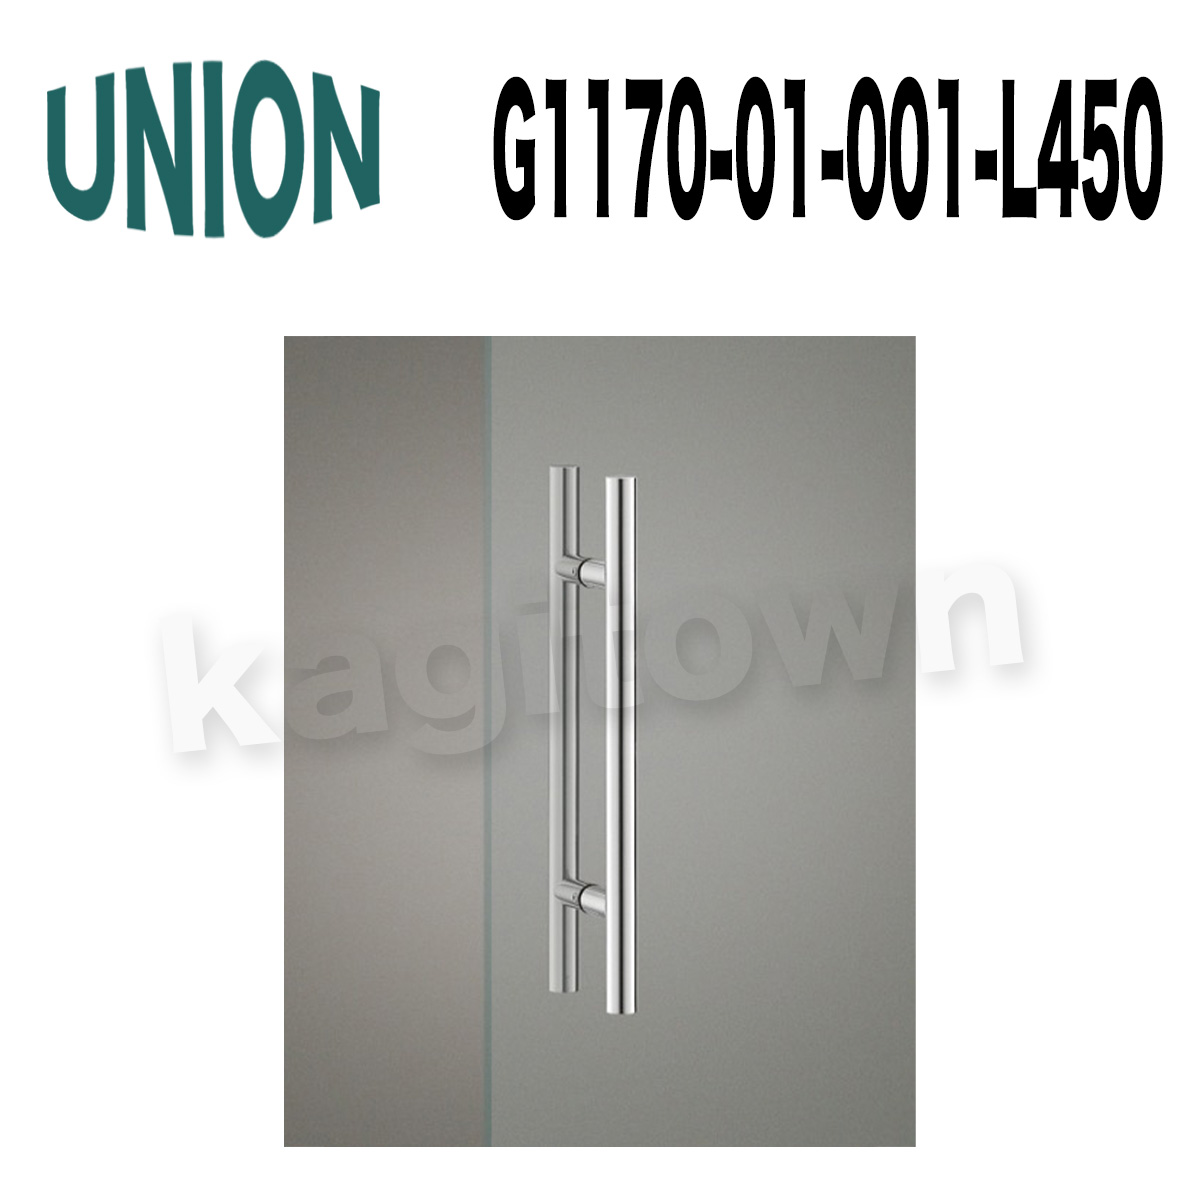 UNION【ユニオン】G1170-01-001-L450 ドアハンドル]押し棒（内外